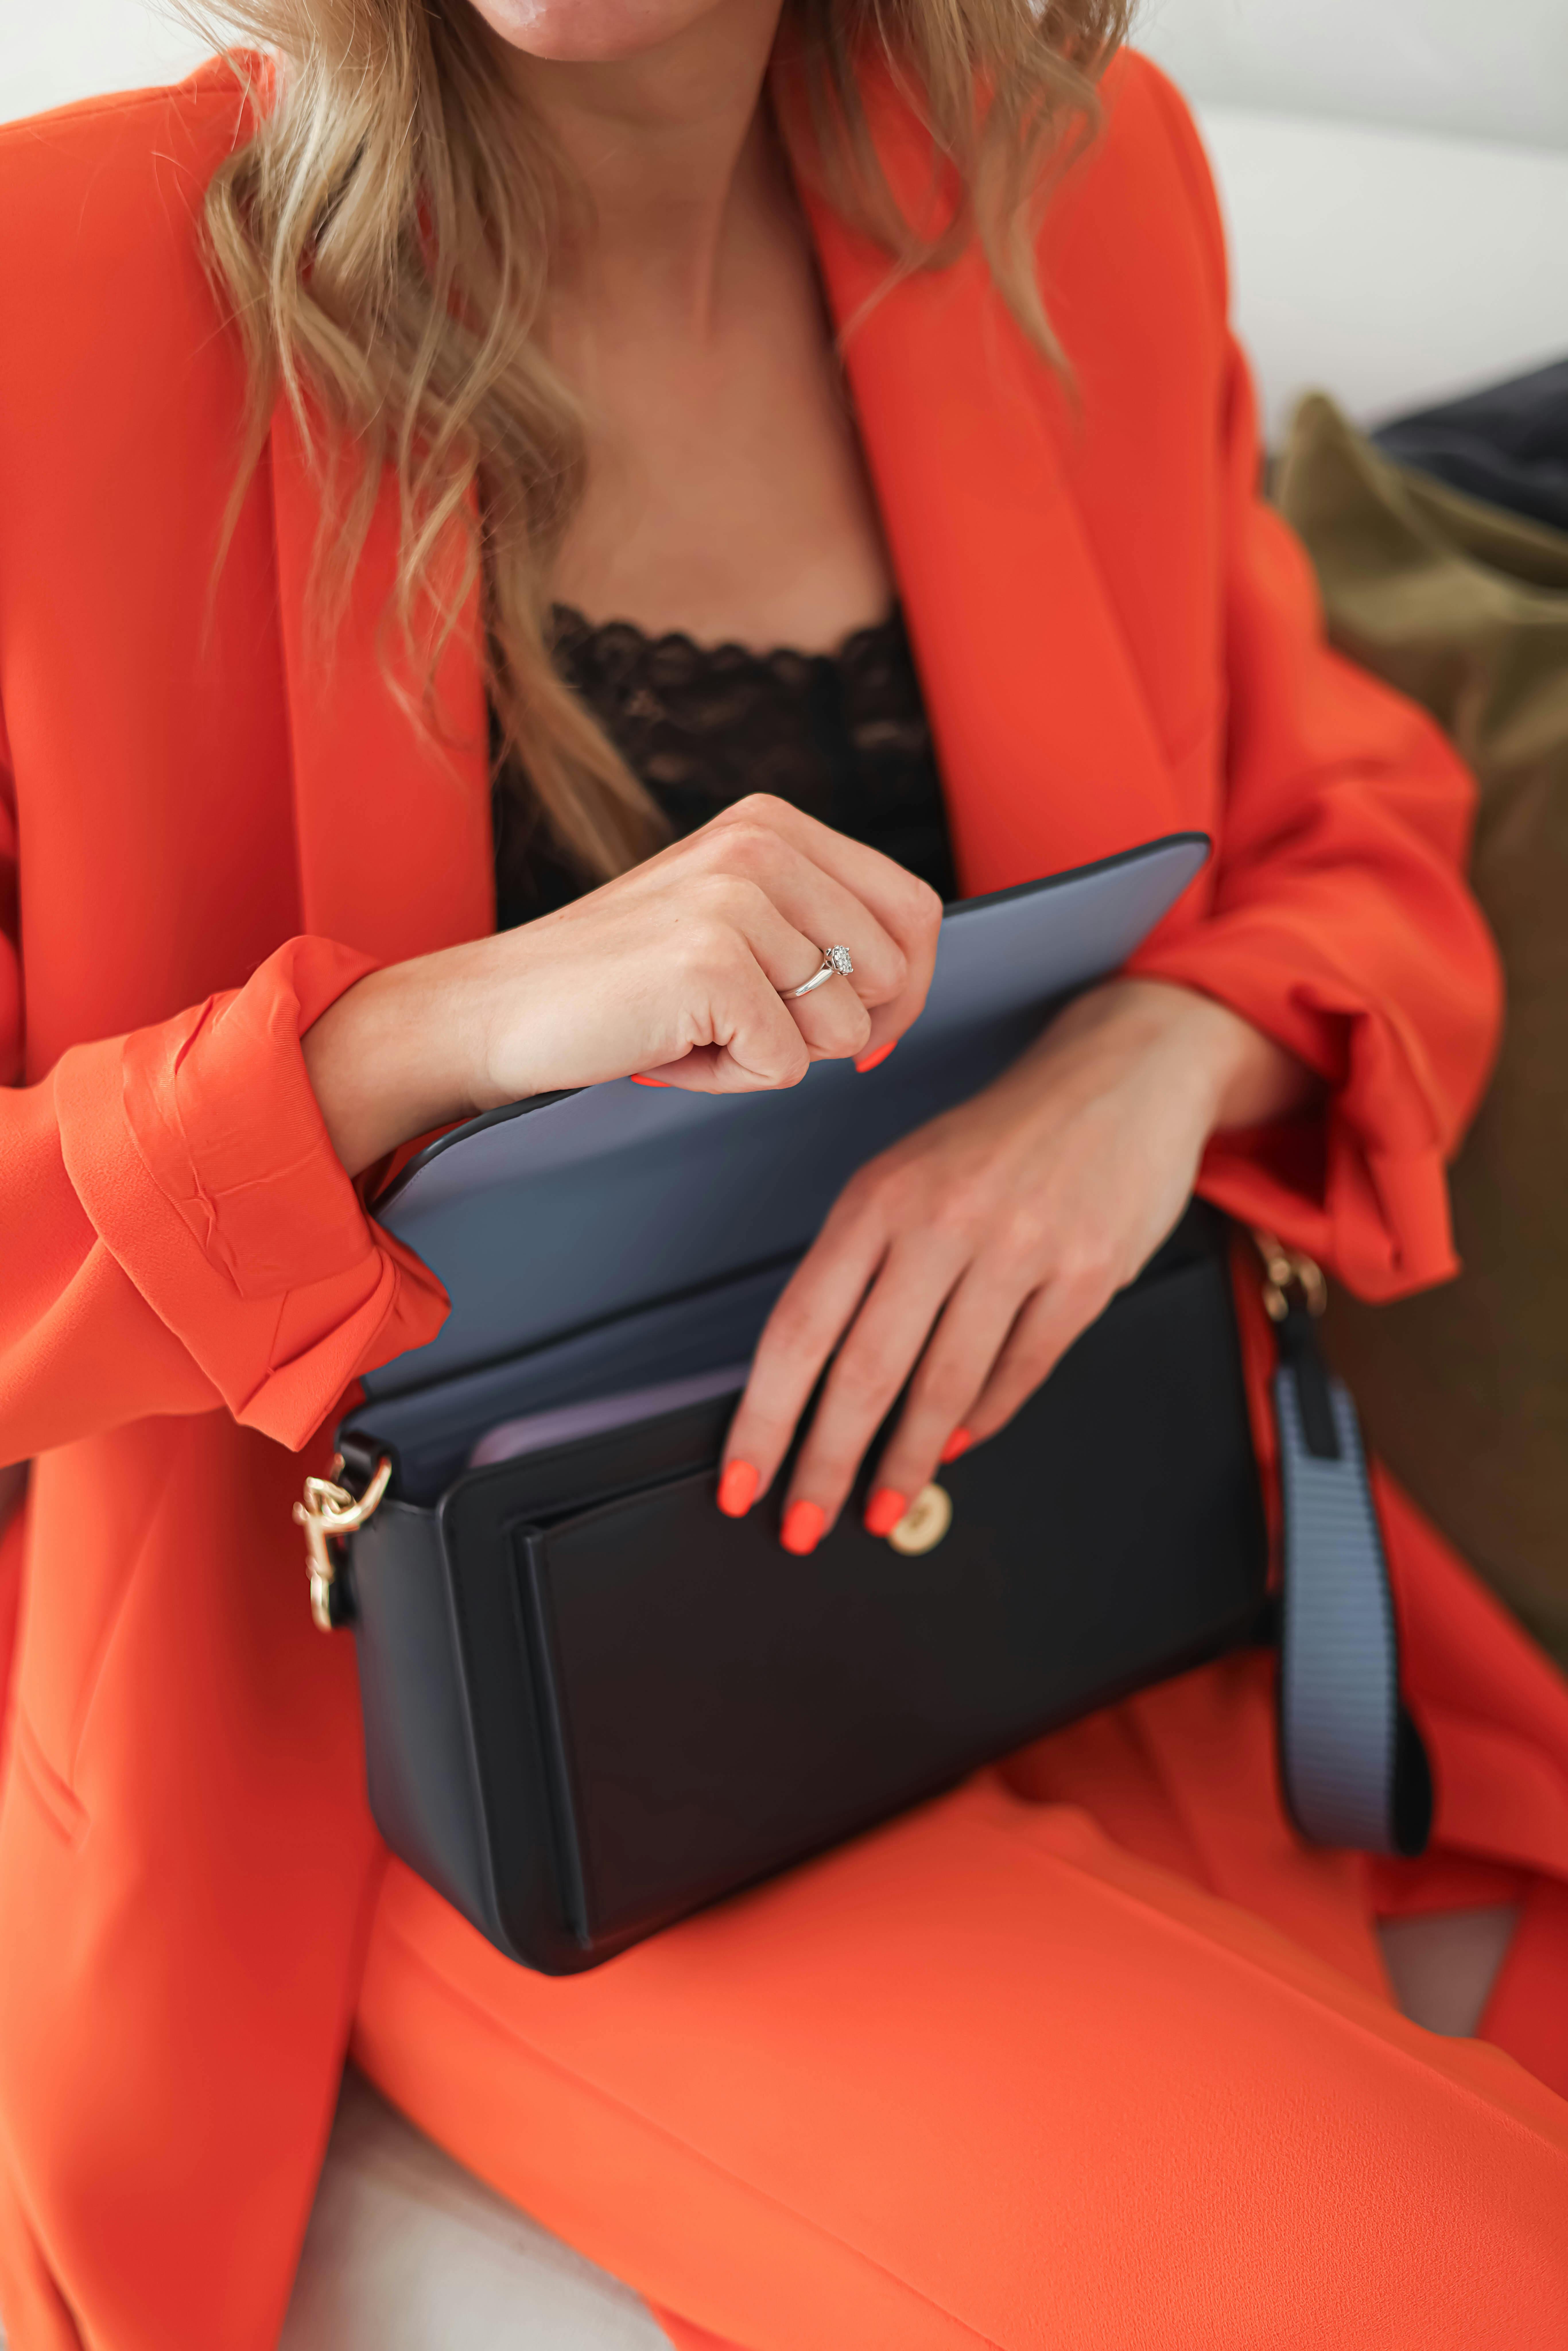 Femme sortant un portefeuille de son sac | Source : Pexels